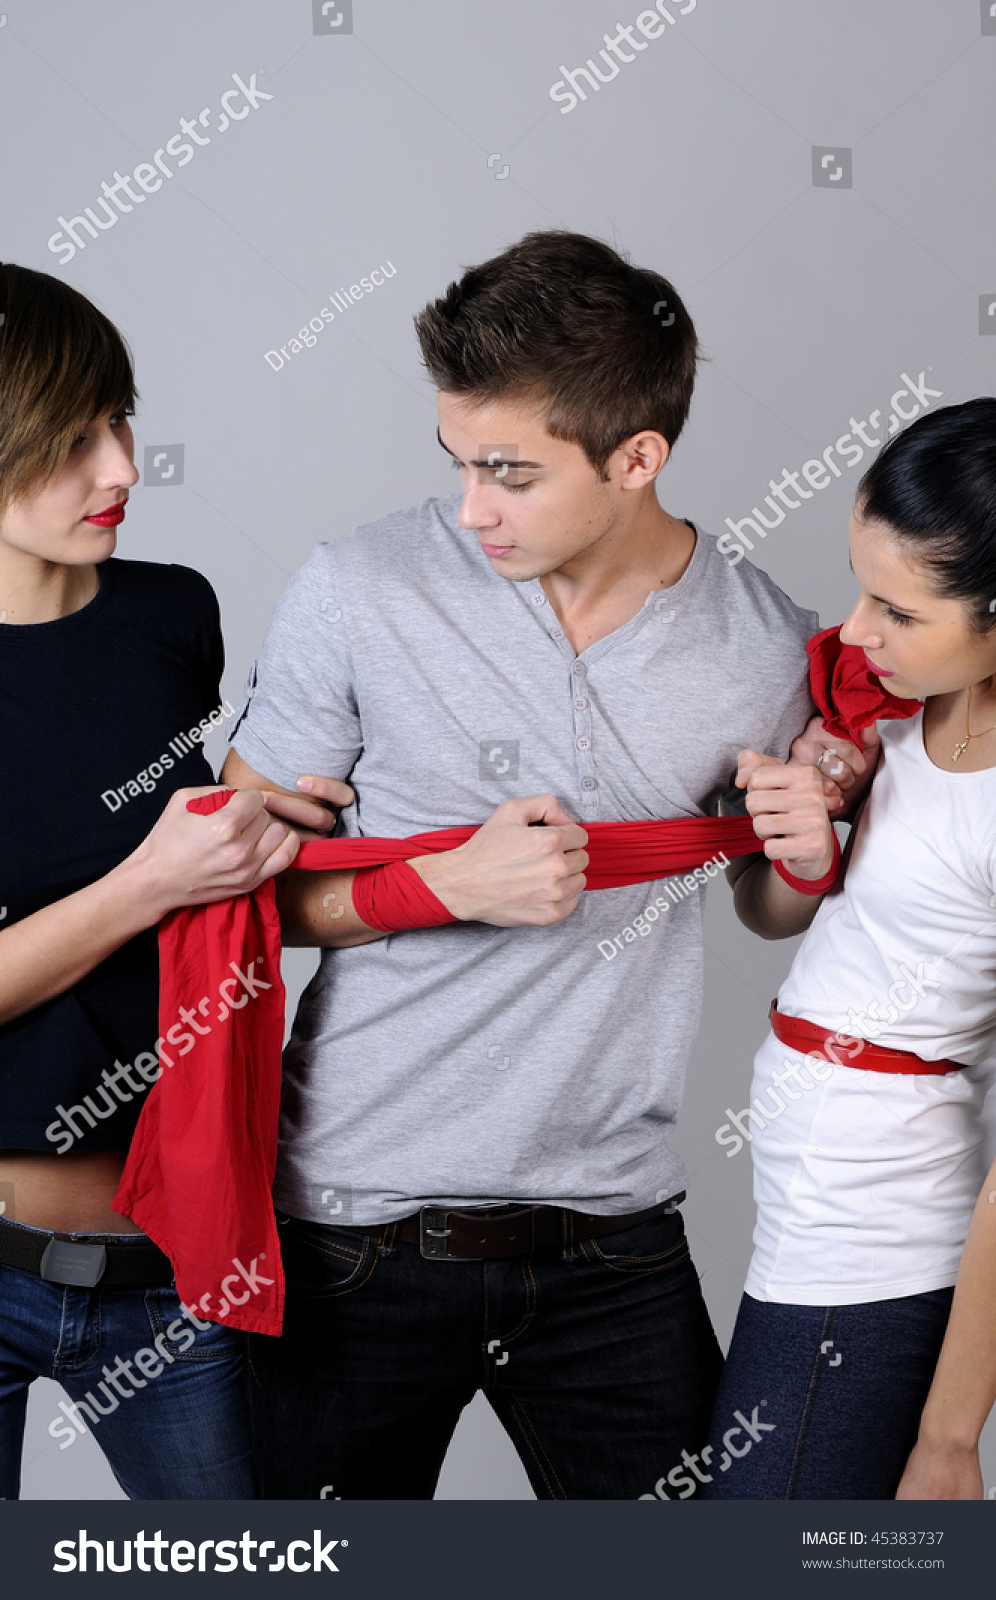 Three Teenagers Fighting Stock Photo 45383737 : Shutterstock